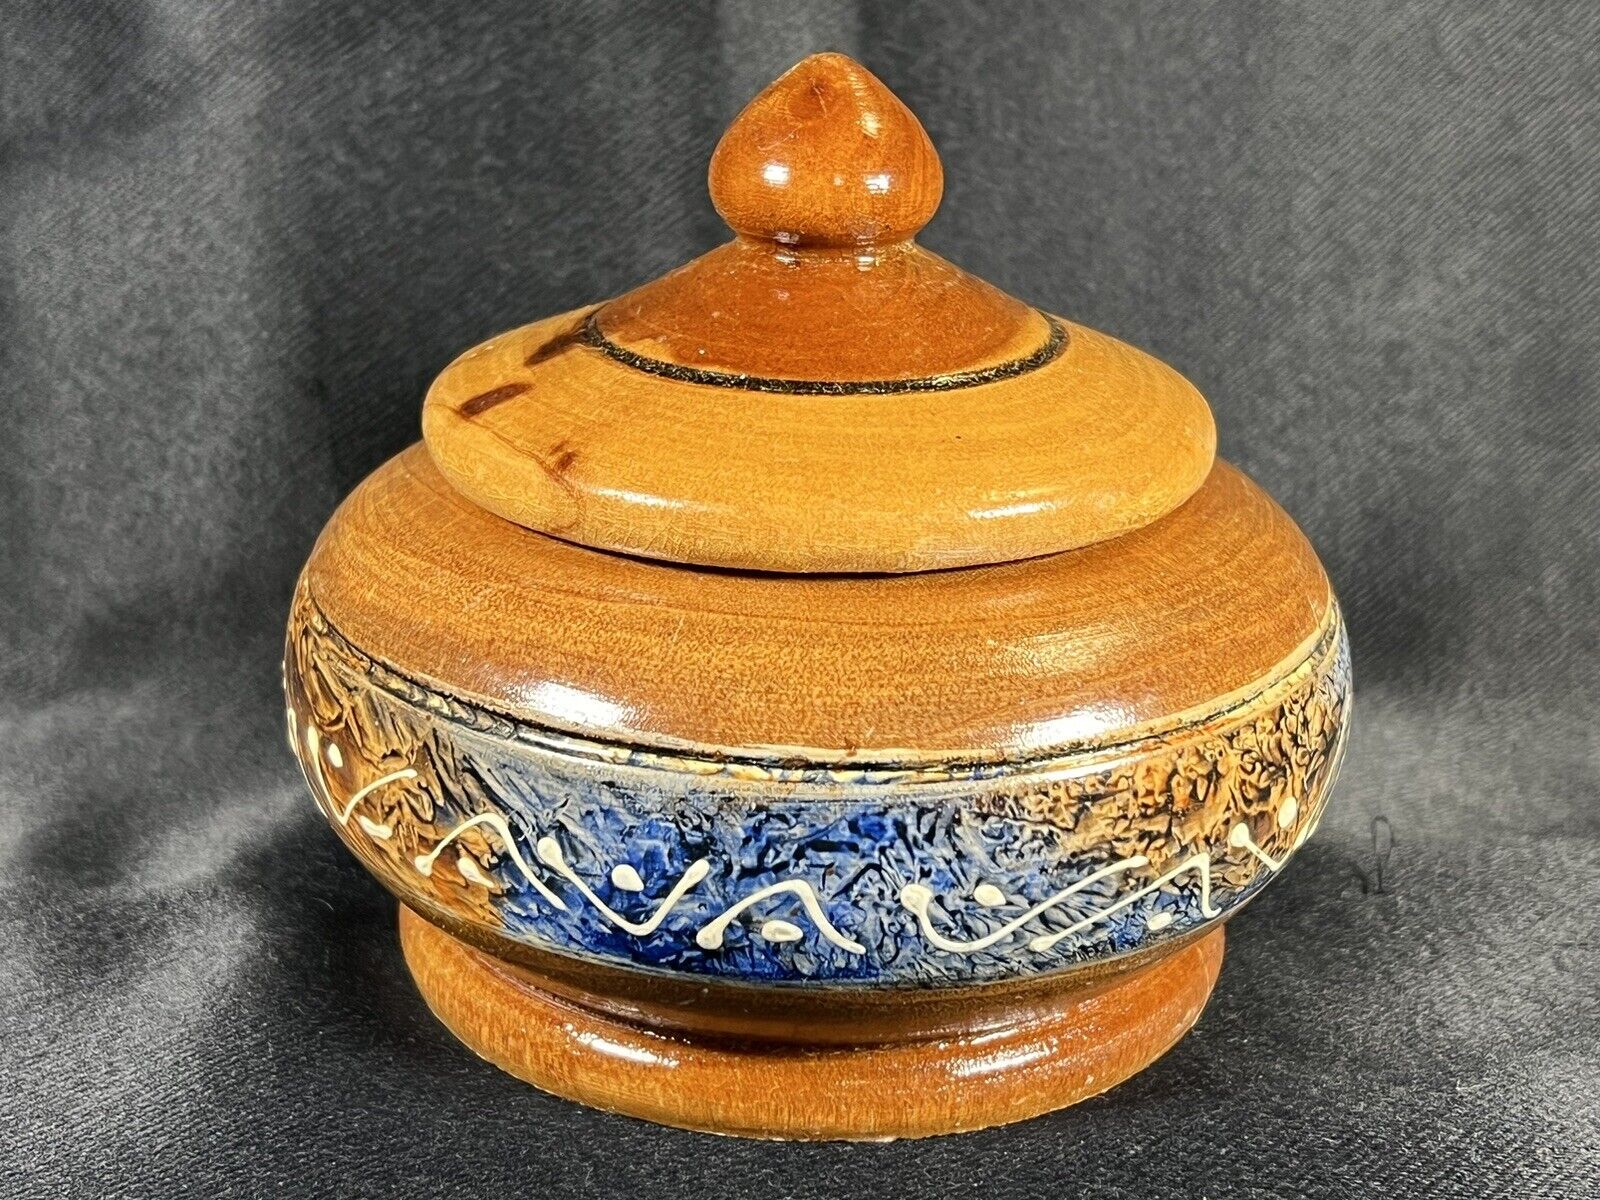 VTG Hand Carved Turned Wooden Bowl W/Lid Folk Art Round Trinket Painted Decor 4”